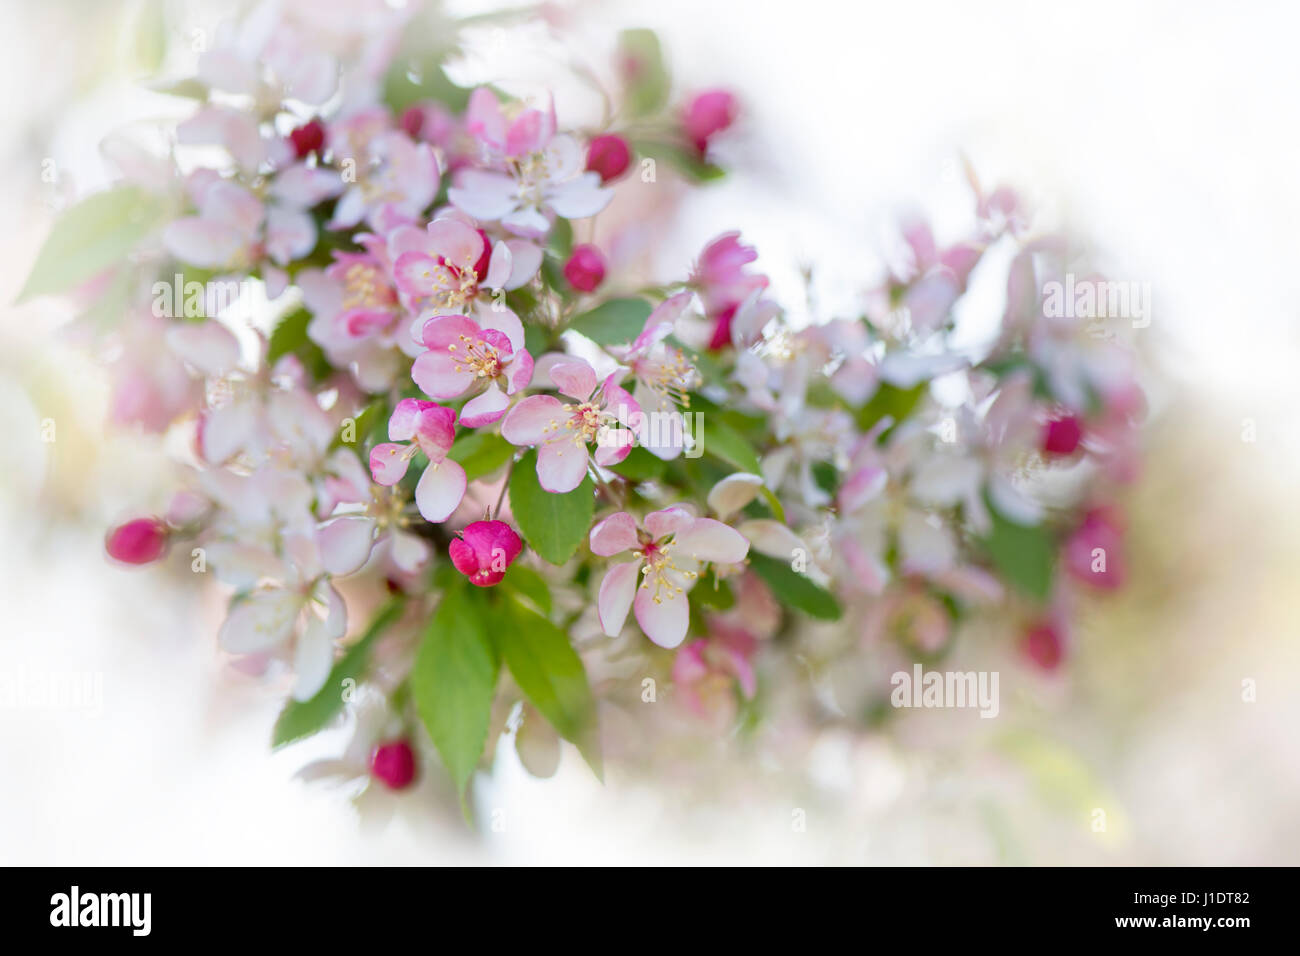 Close-up immagine della bella primavera sbocciano i fiori fiori rosa e bianchi del giapponese Crab Apple tree - Malus floribunda Foto Stock